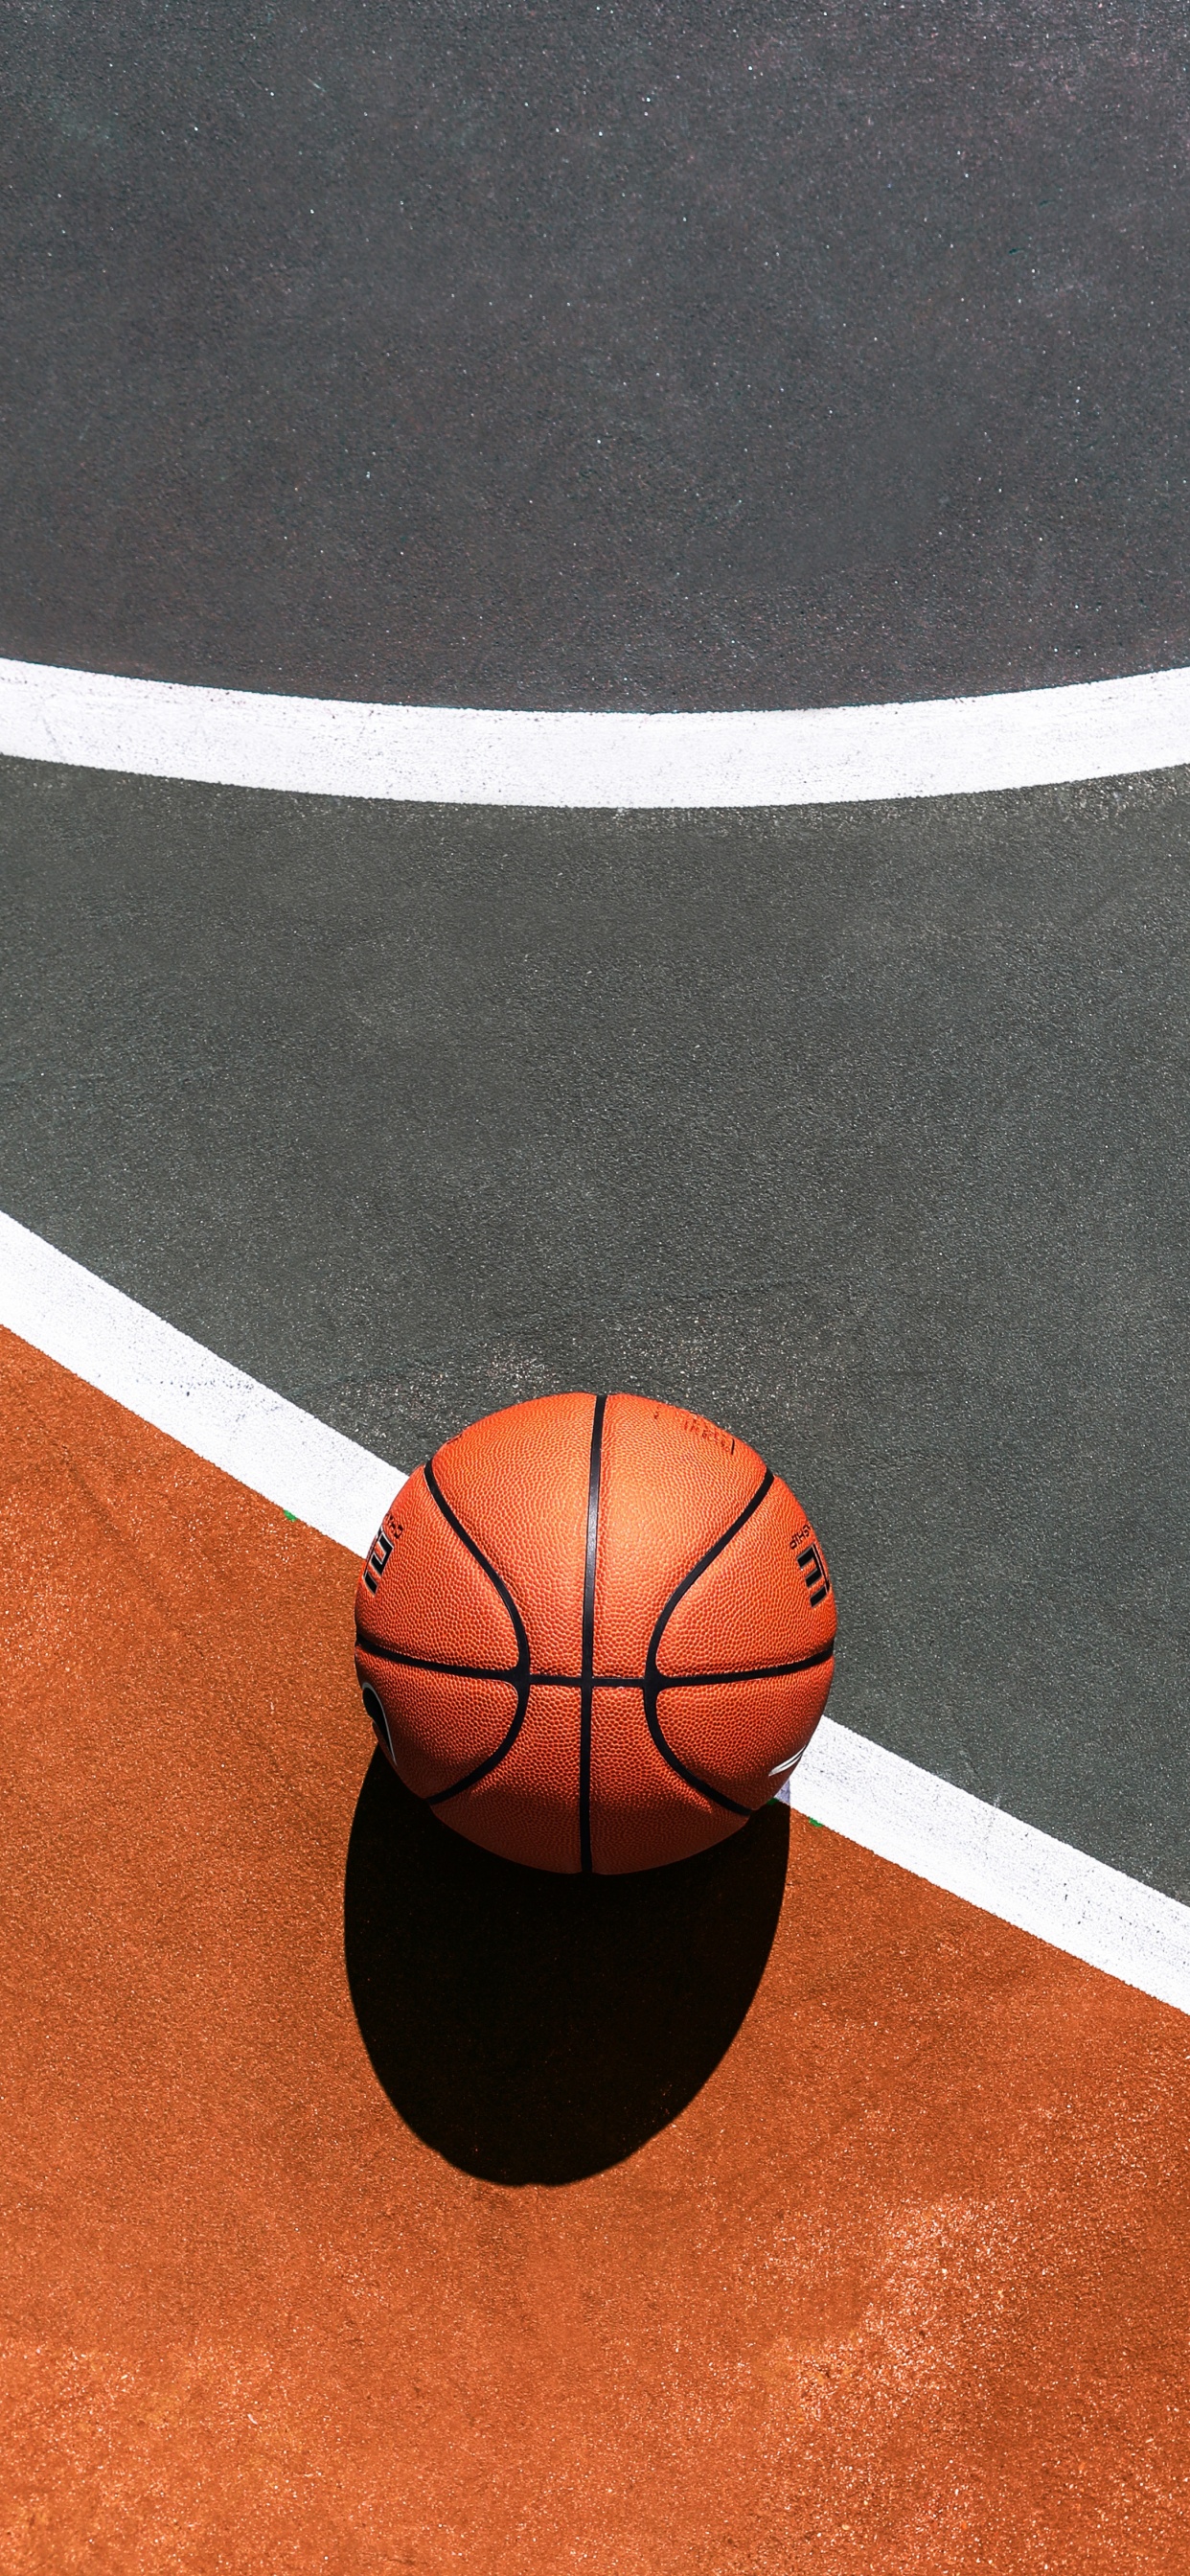 篮球, 篮球场, 运动场地, 球, 团队运动 壁纸 1242x2688 允许